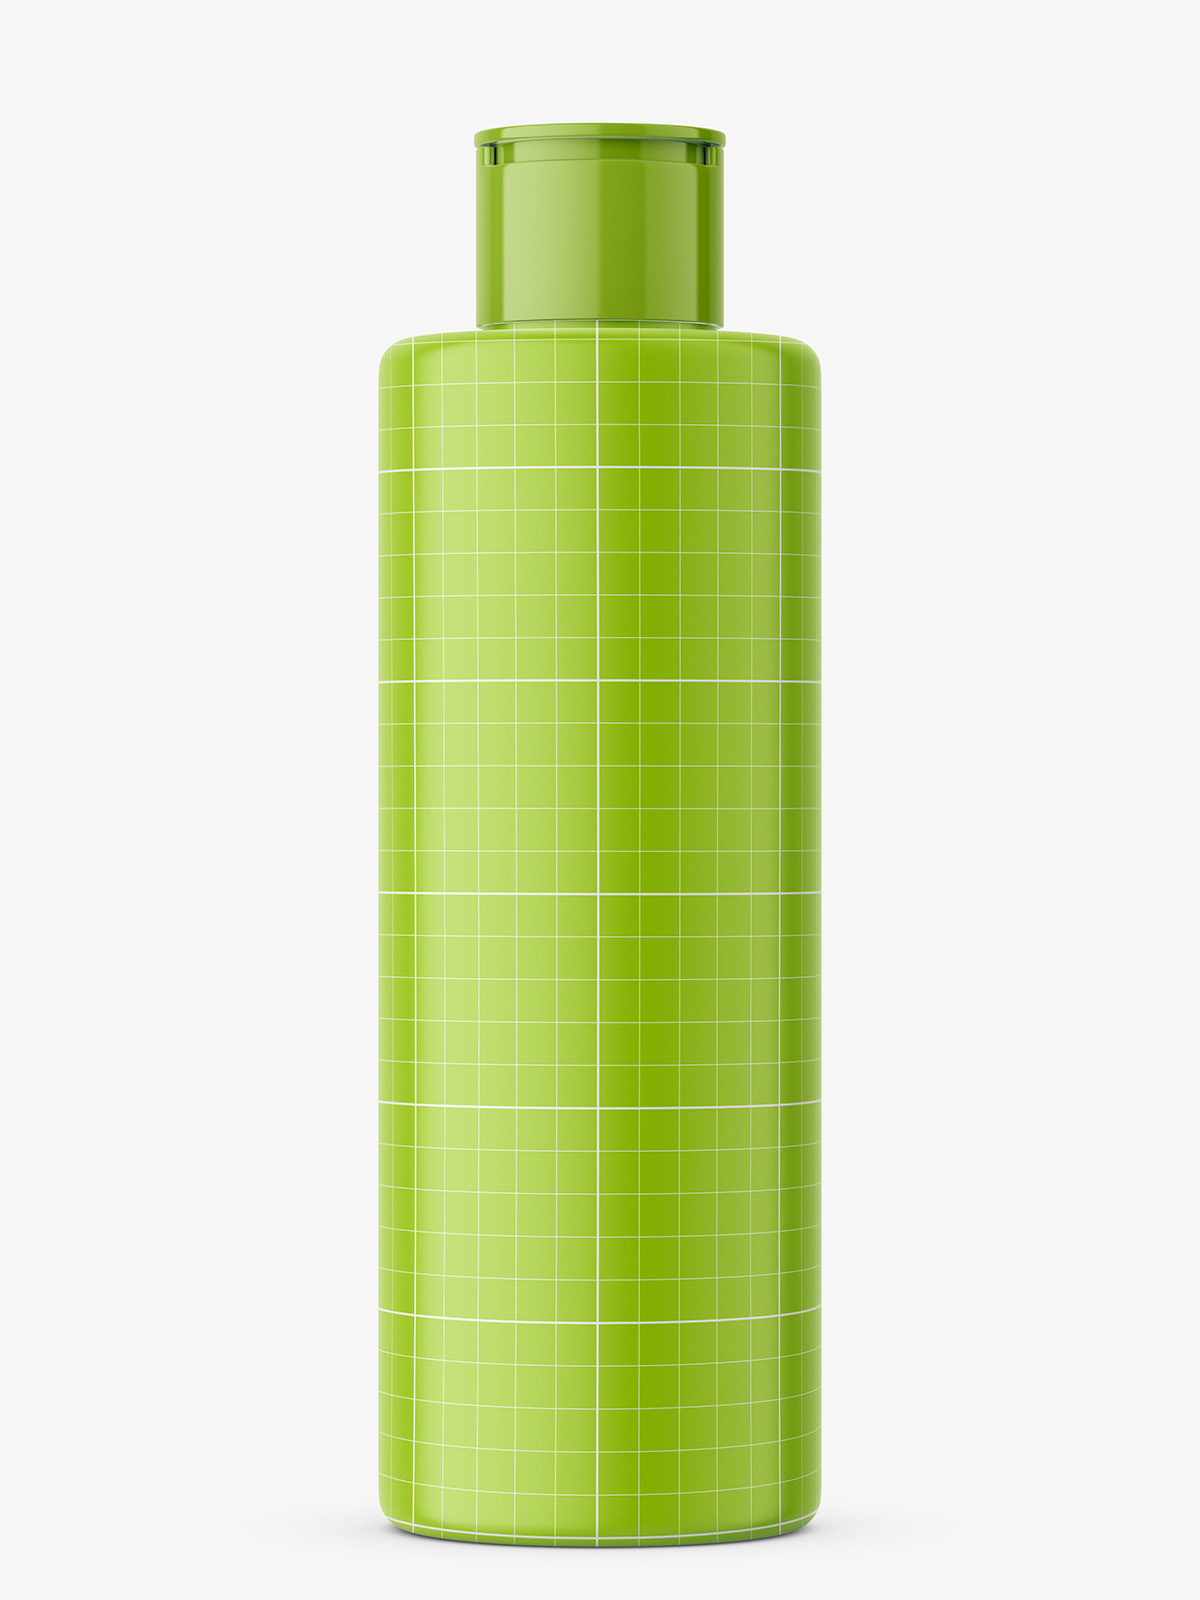 Download Transparent Cosmetic Oil Bottle Mockup Smarty Mockups